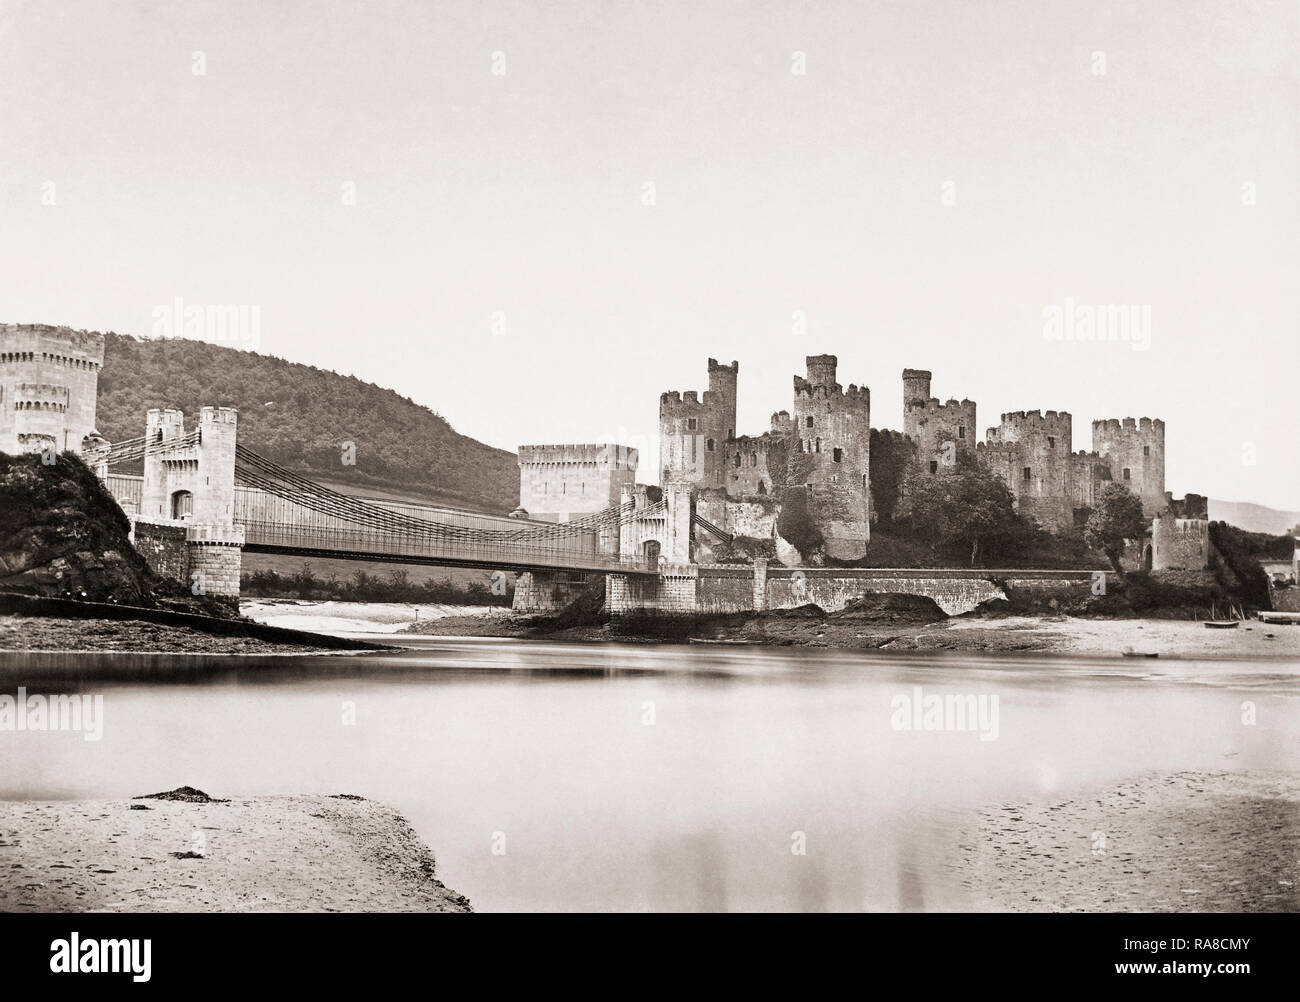 Conwy, Wales, Regno Unito. Conwy Castle risalente alla fine del XIX secolo. Il castello fu costruito nel XIII secolo. È un sito Patrimonio Mondiale dell'UNESCO. Foto Stock